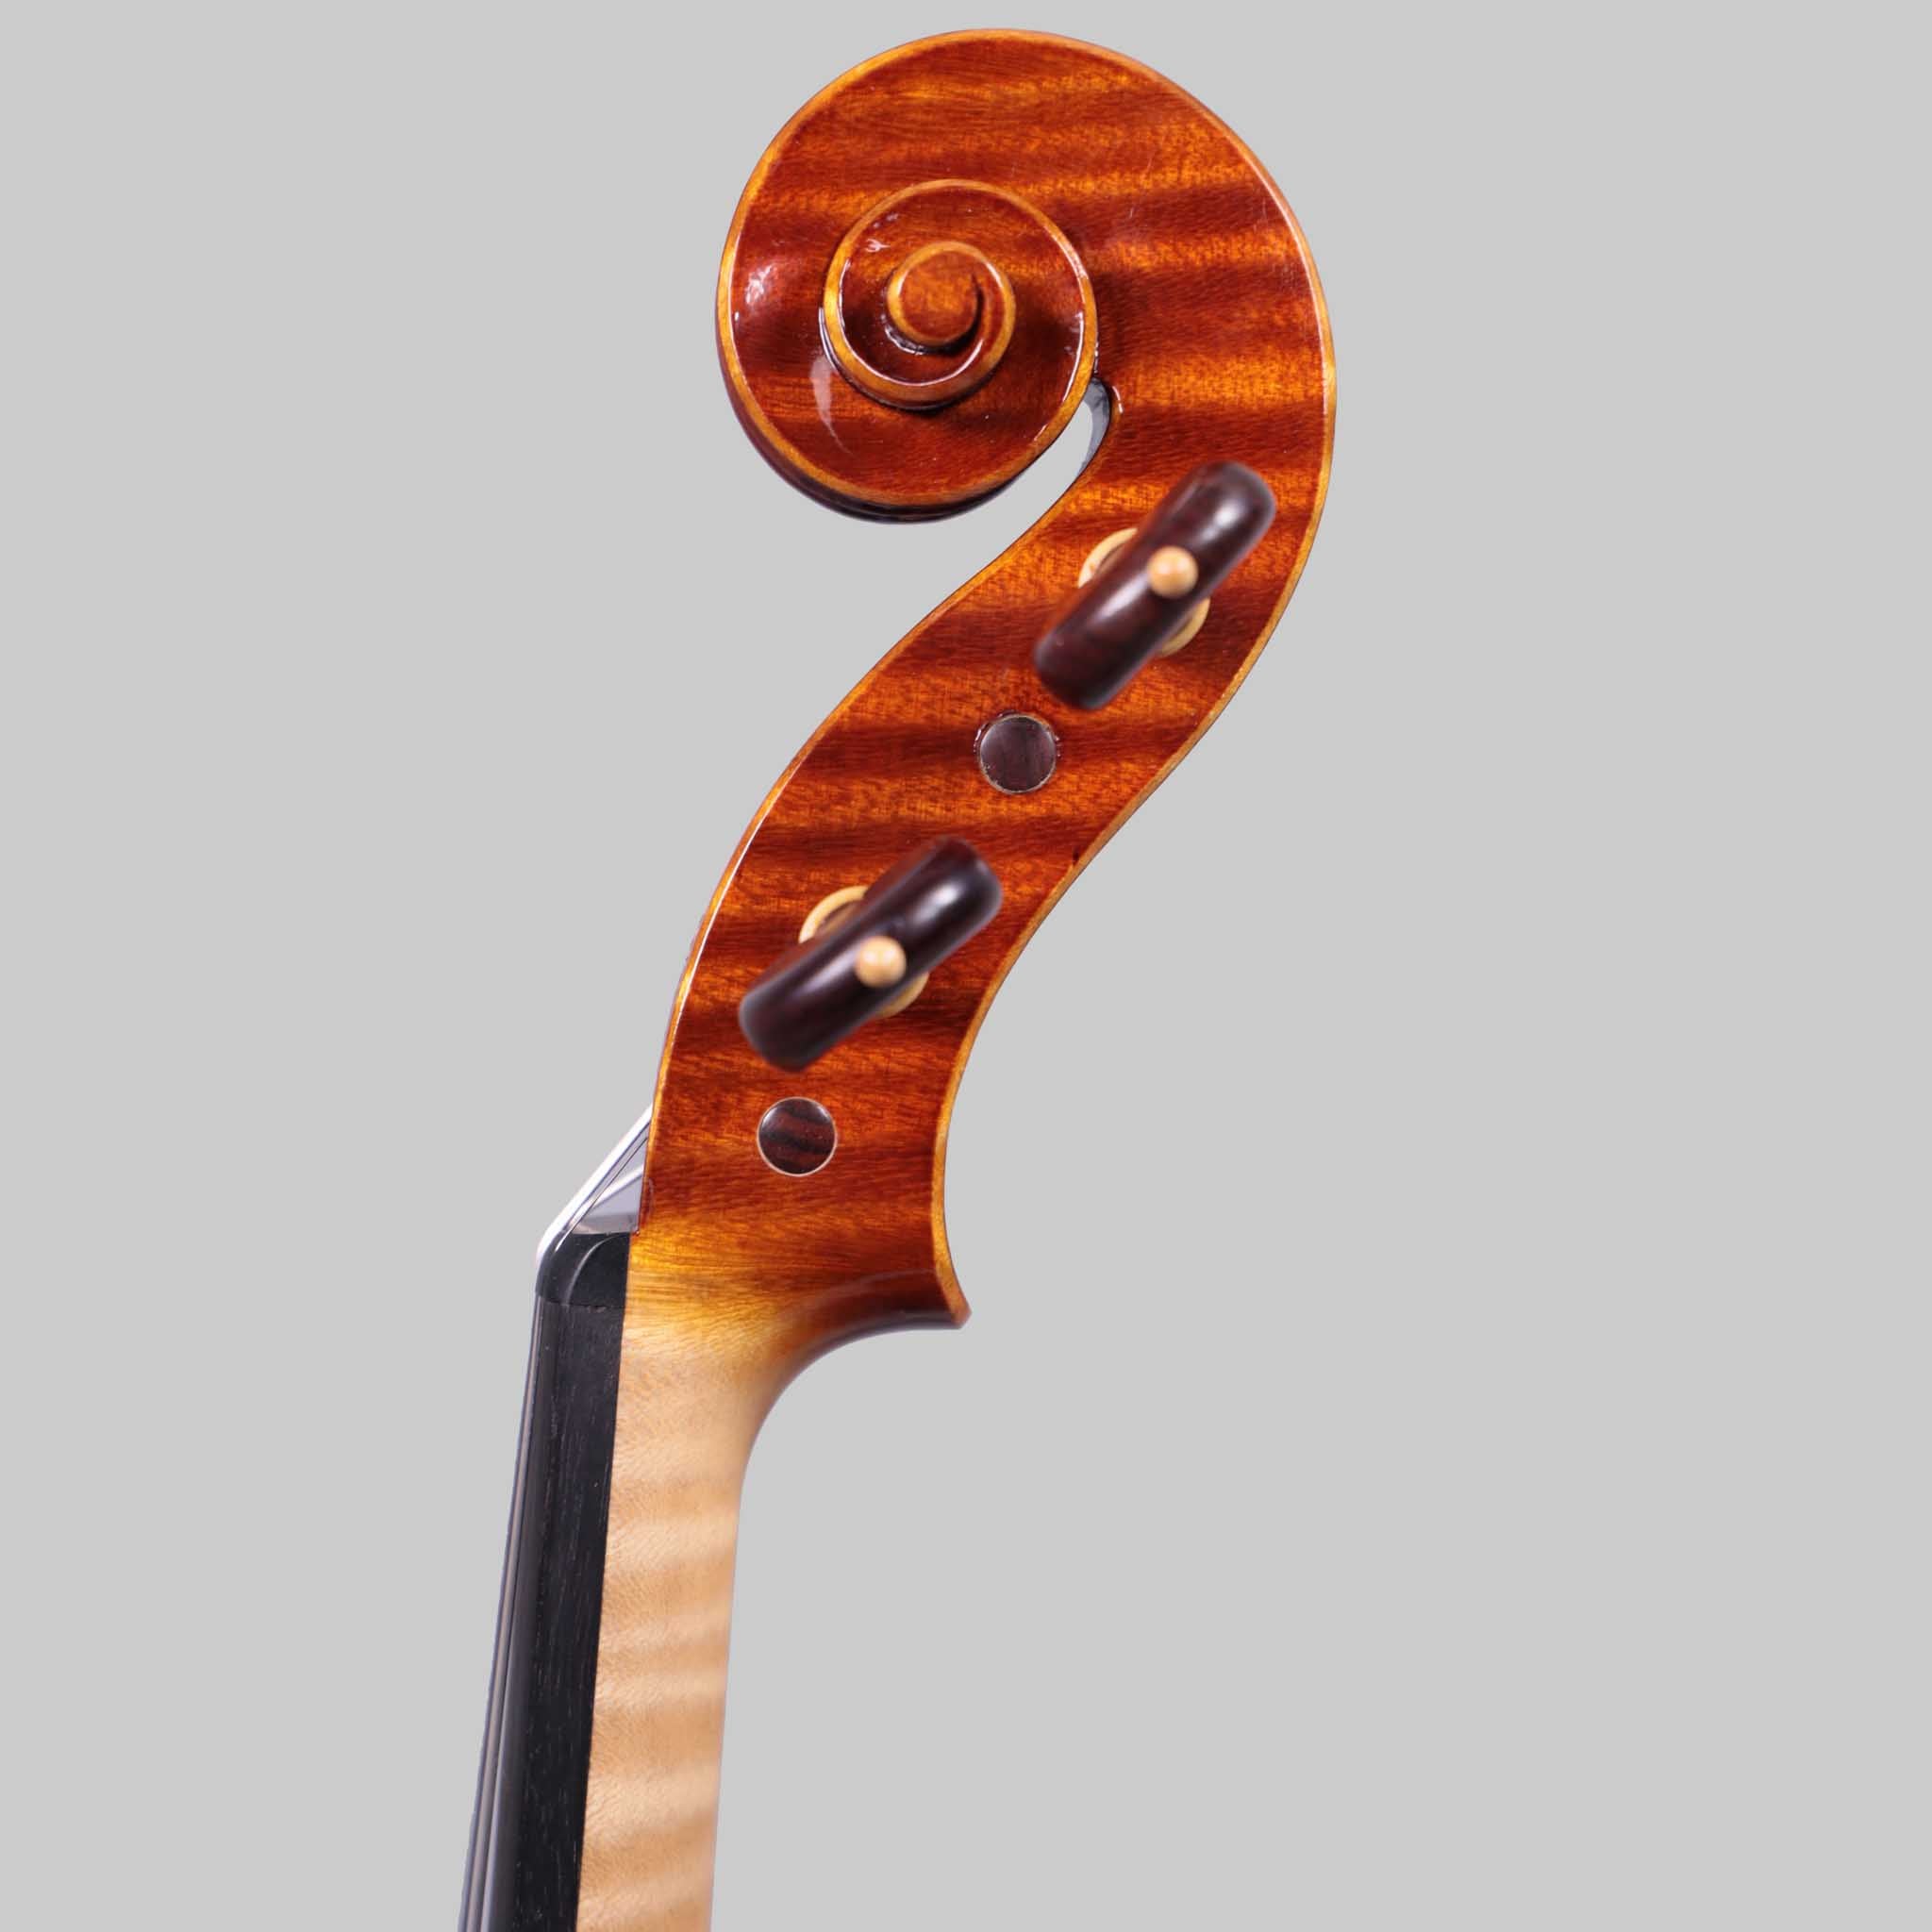 Marco Cargnelutti, Udine "Il Toscano" 2021 Violin